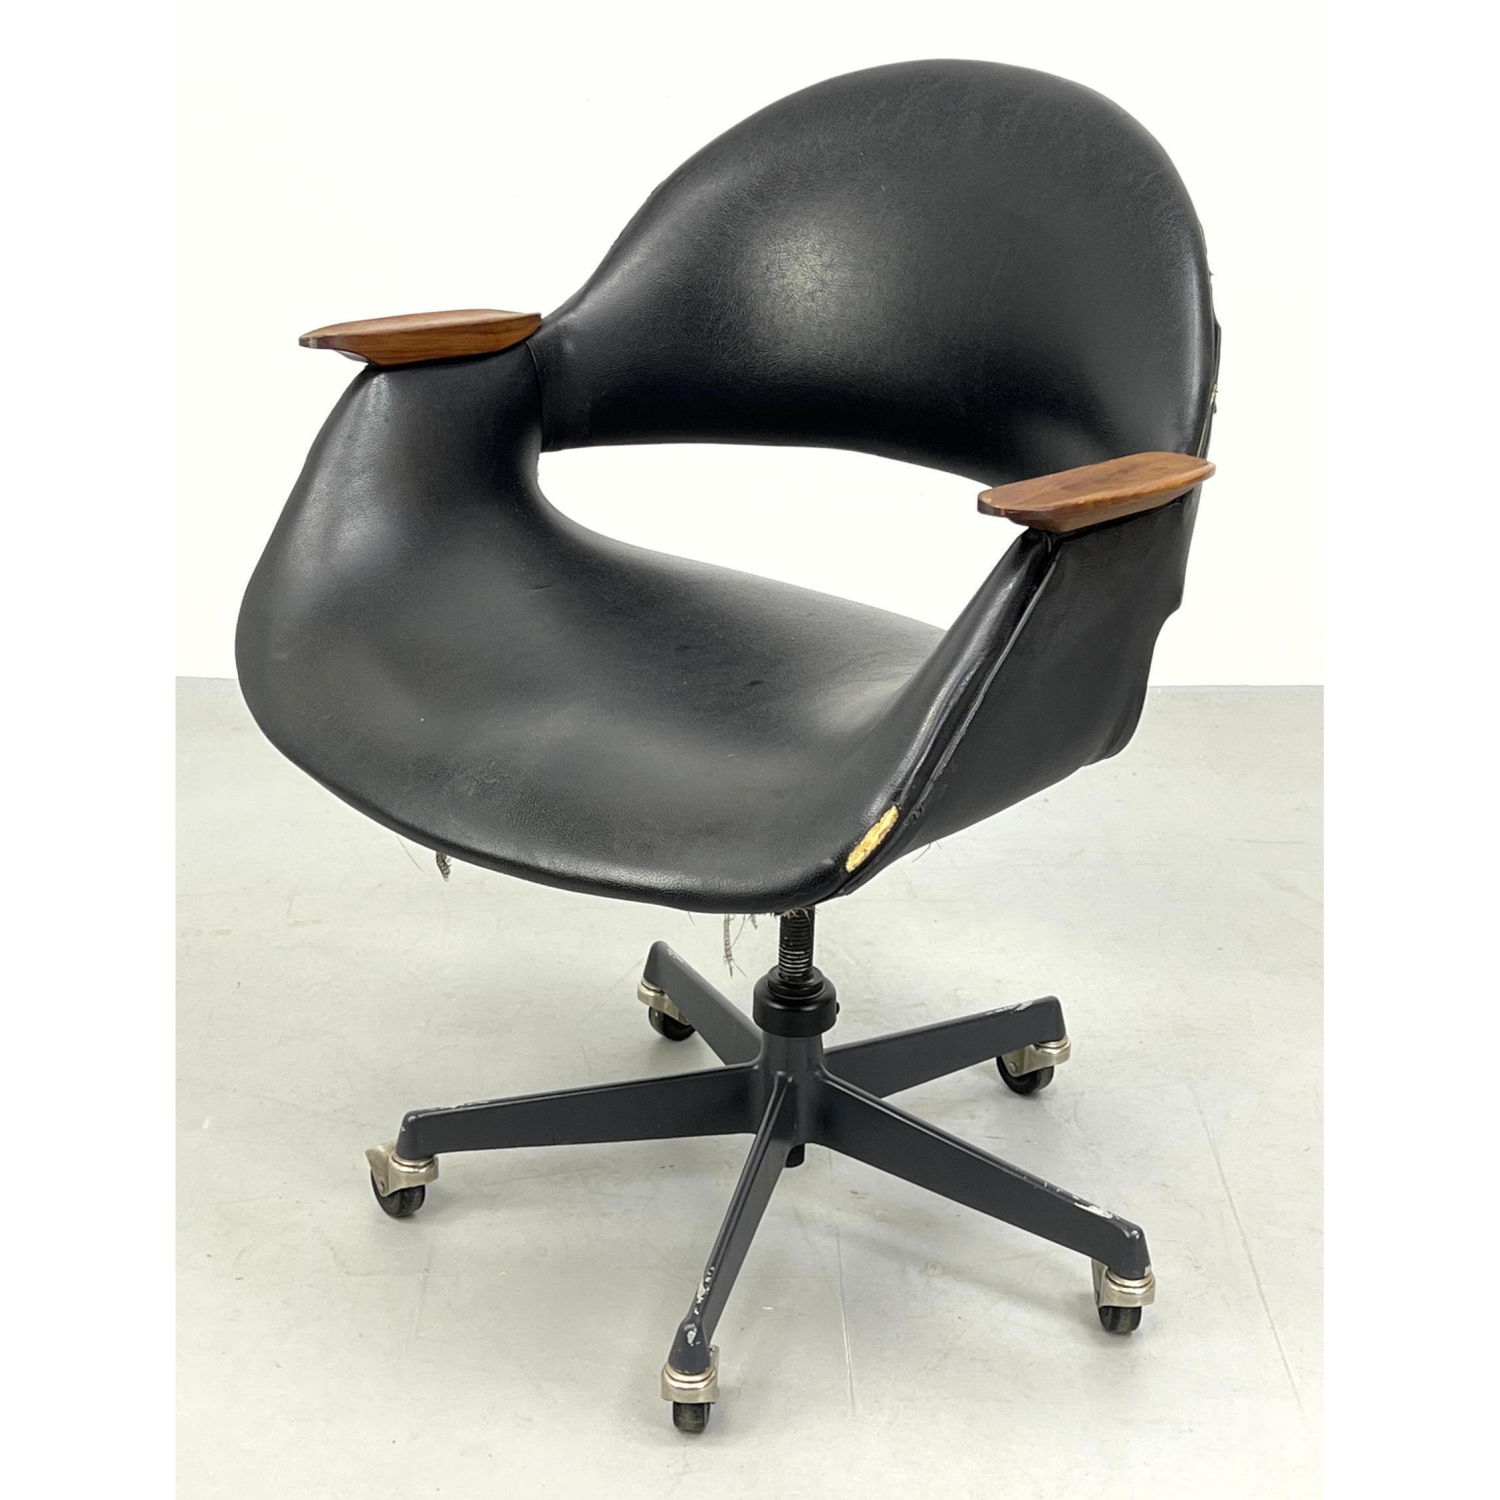 Finn Juhl Style Desk Chair Teak 2ba6cf